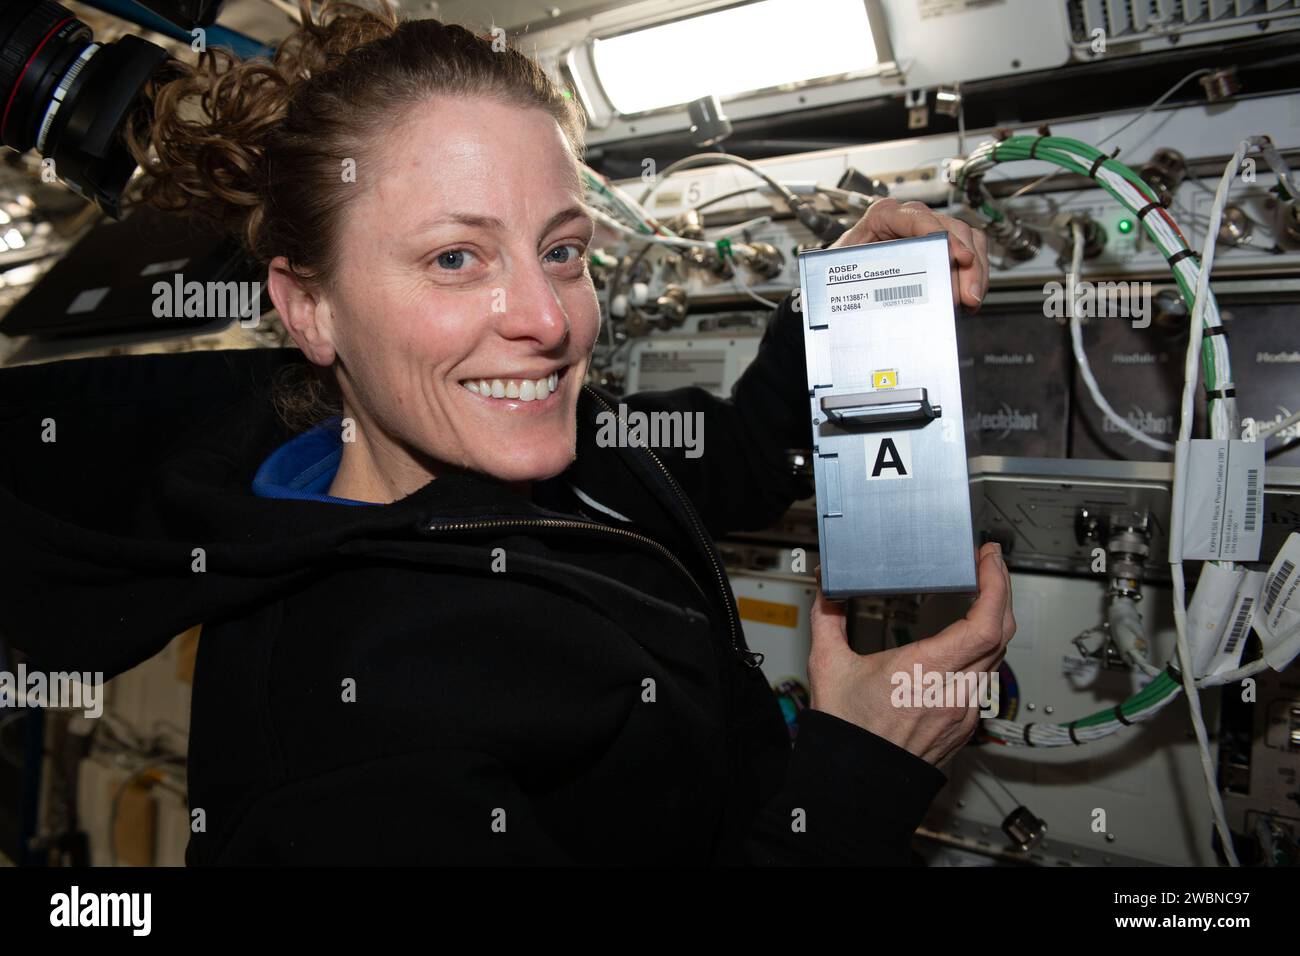 Iss070e037585 (11 dicembre 2023) --- astronauta NASA e ingegnere Flught Expedition 70 Loral o'Hara mostra hardware di ricerca a supporto dell'UMAMI, o comprensione della microgravità sull'interazione animale-microbo, esperimento di biologia spaziale. O'Hara ha in programma la cassetta per l'elaborazione dei fluidi (FPC) dell'Avanced Space Experiment Processor (ADSEP) che supporta l'osservazione degli effetti del volo spaziale sulle interazioni molecolari e chimiche tra microbi benefici e i loro ospiti animali. Foto Stock